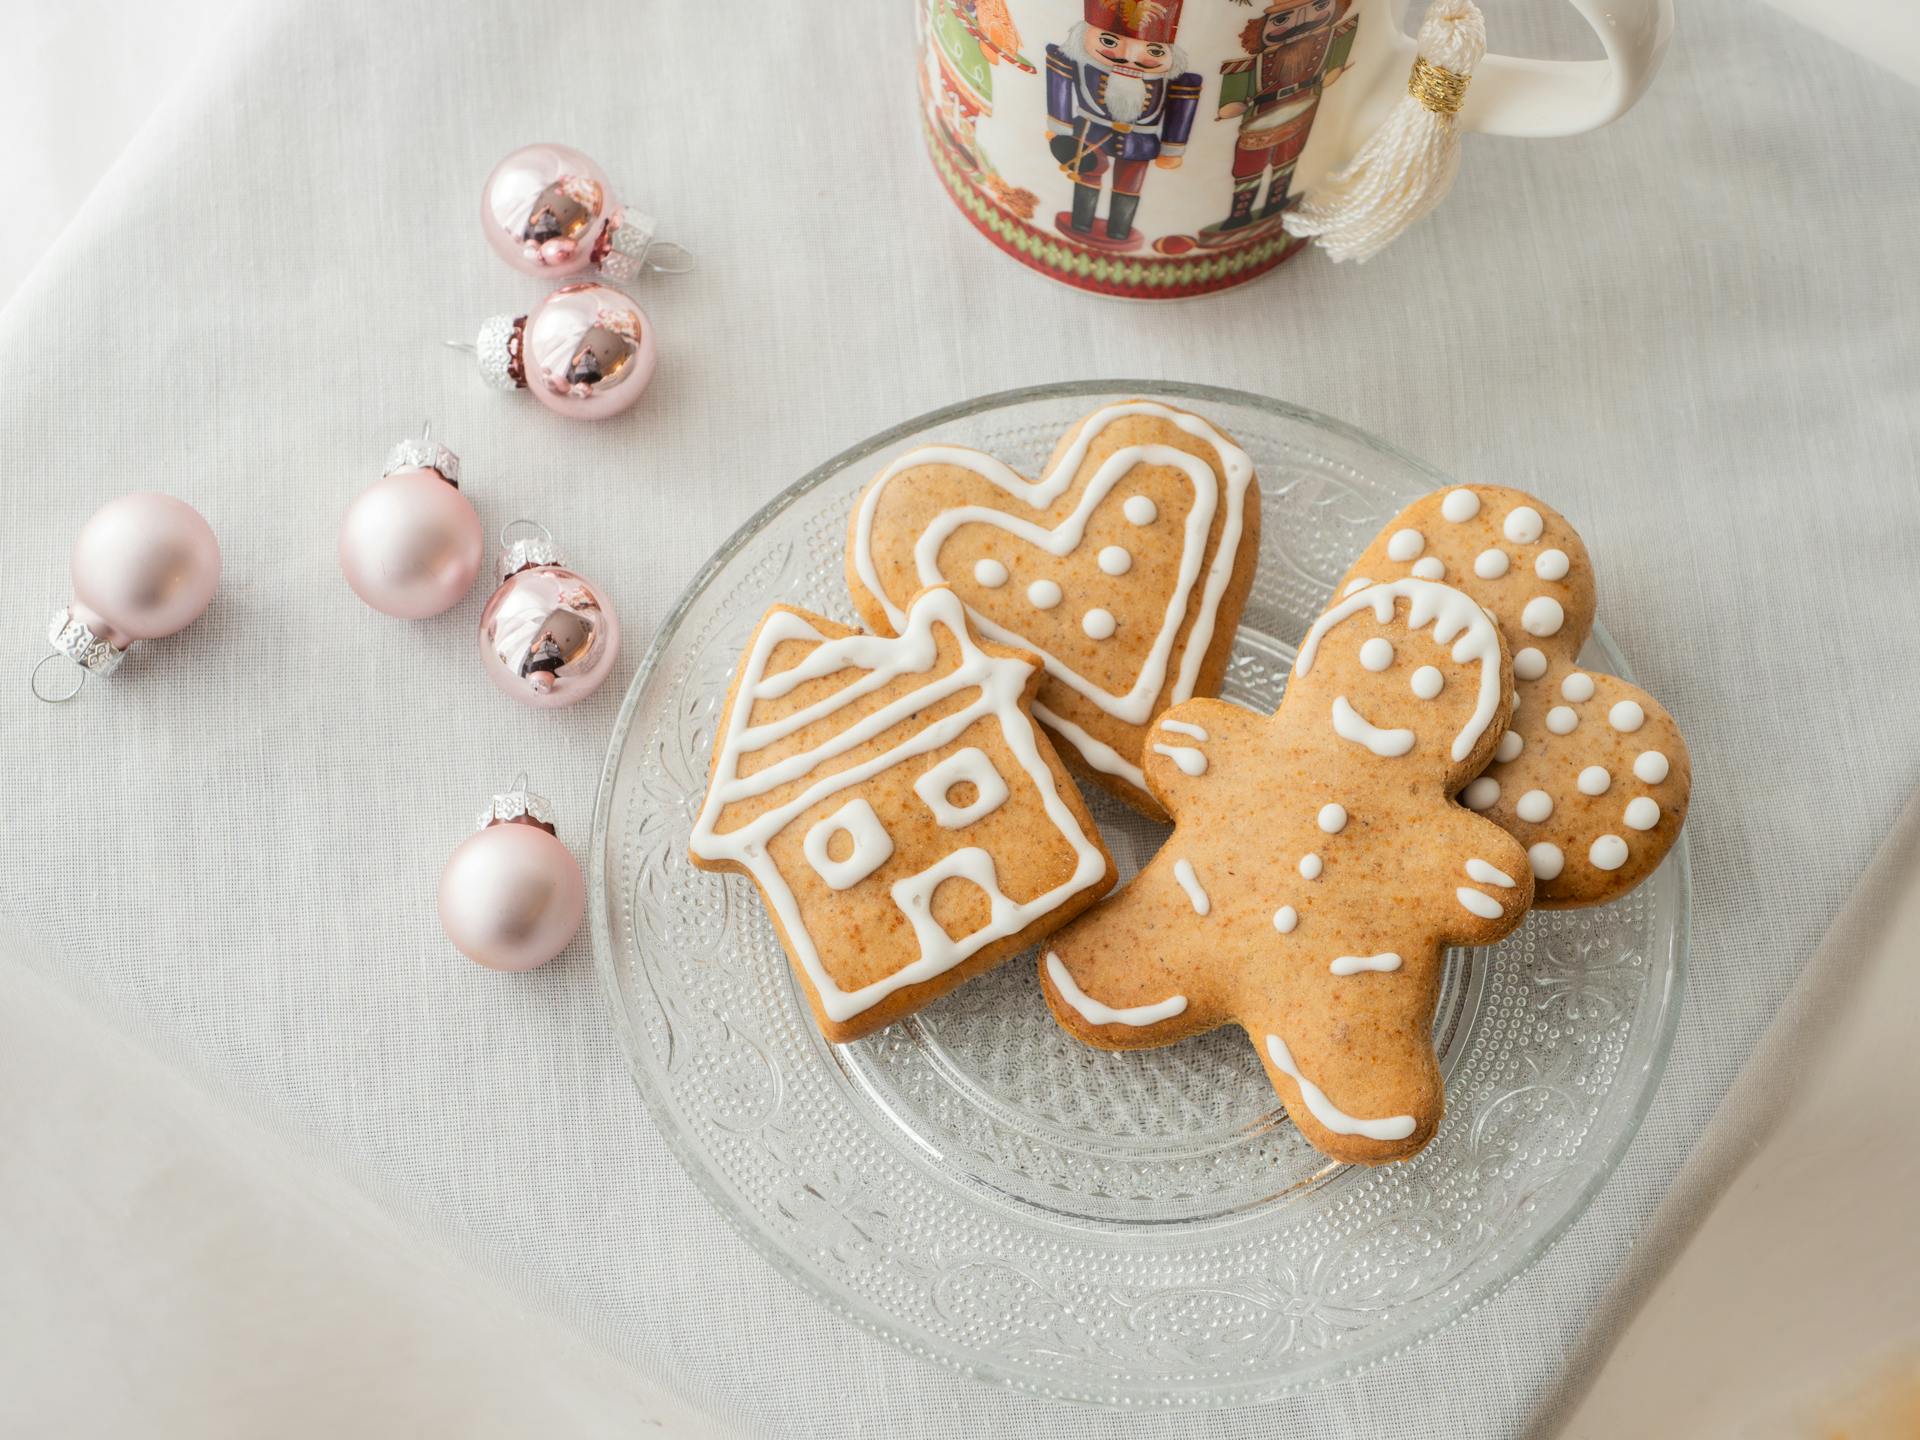 Gingerbread Cookies | Source: Pexels